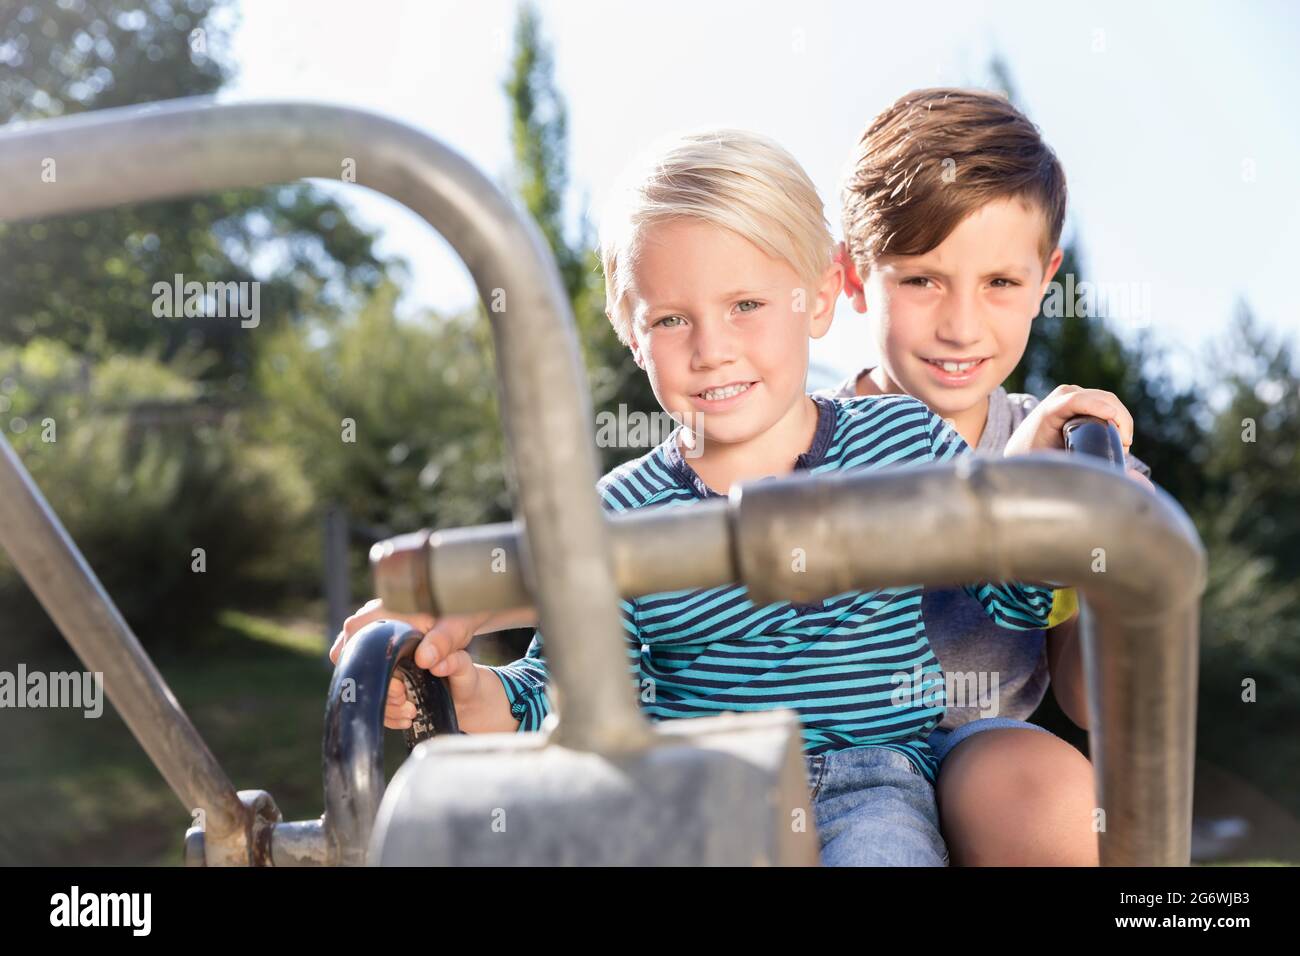 Zwei Jungen mit Bagger auf Abenteuerspielplatz im Park Spaß haben Stockfoto